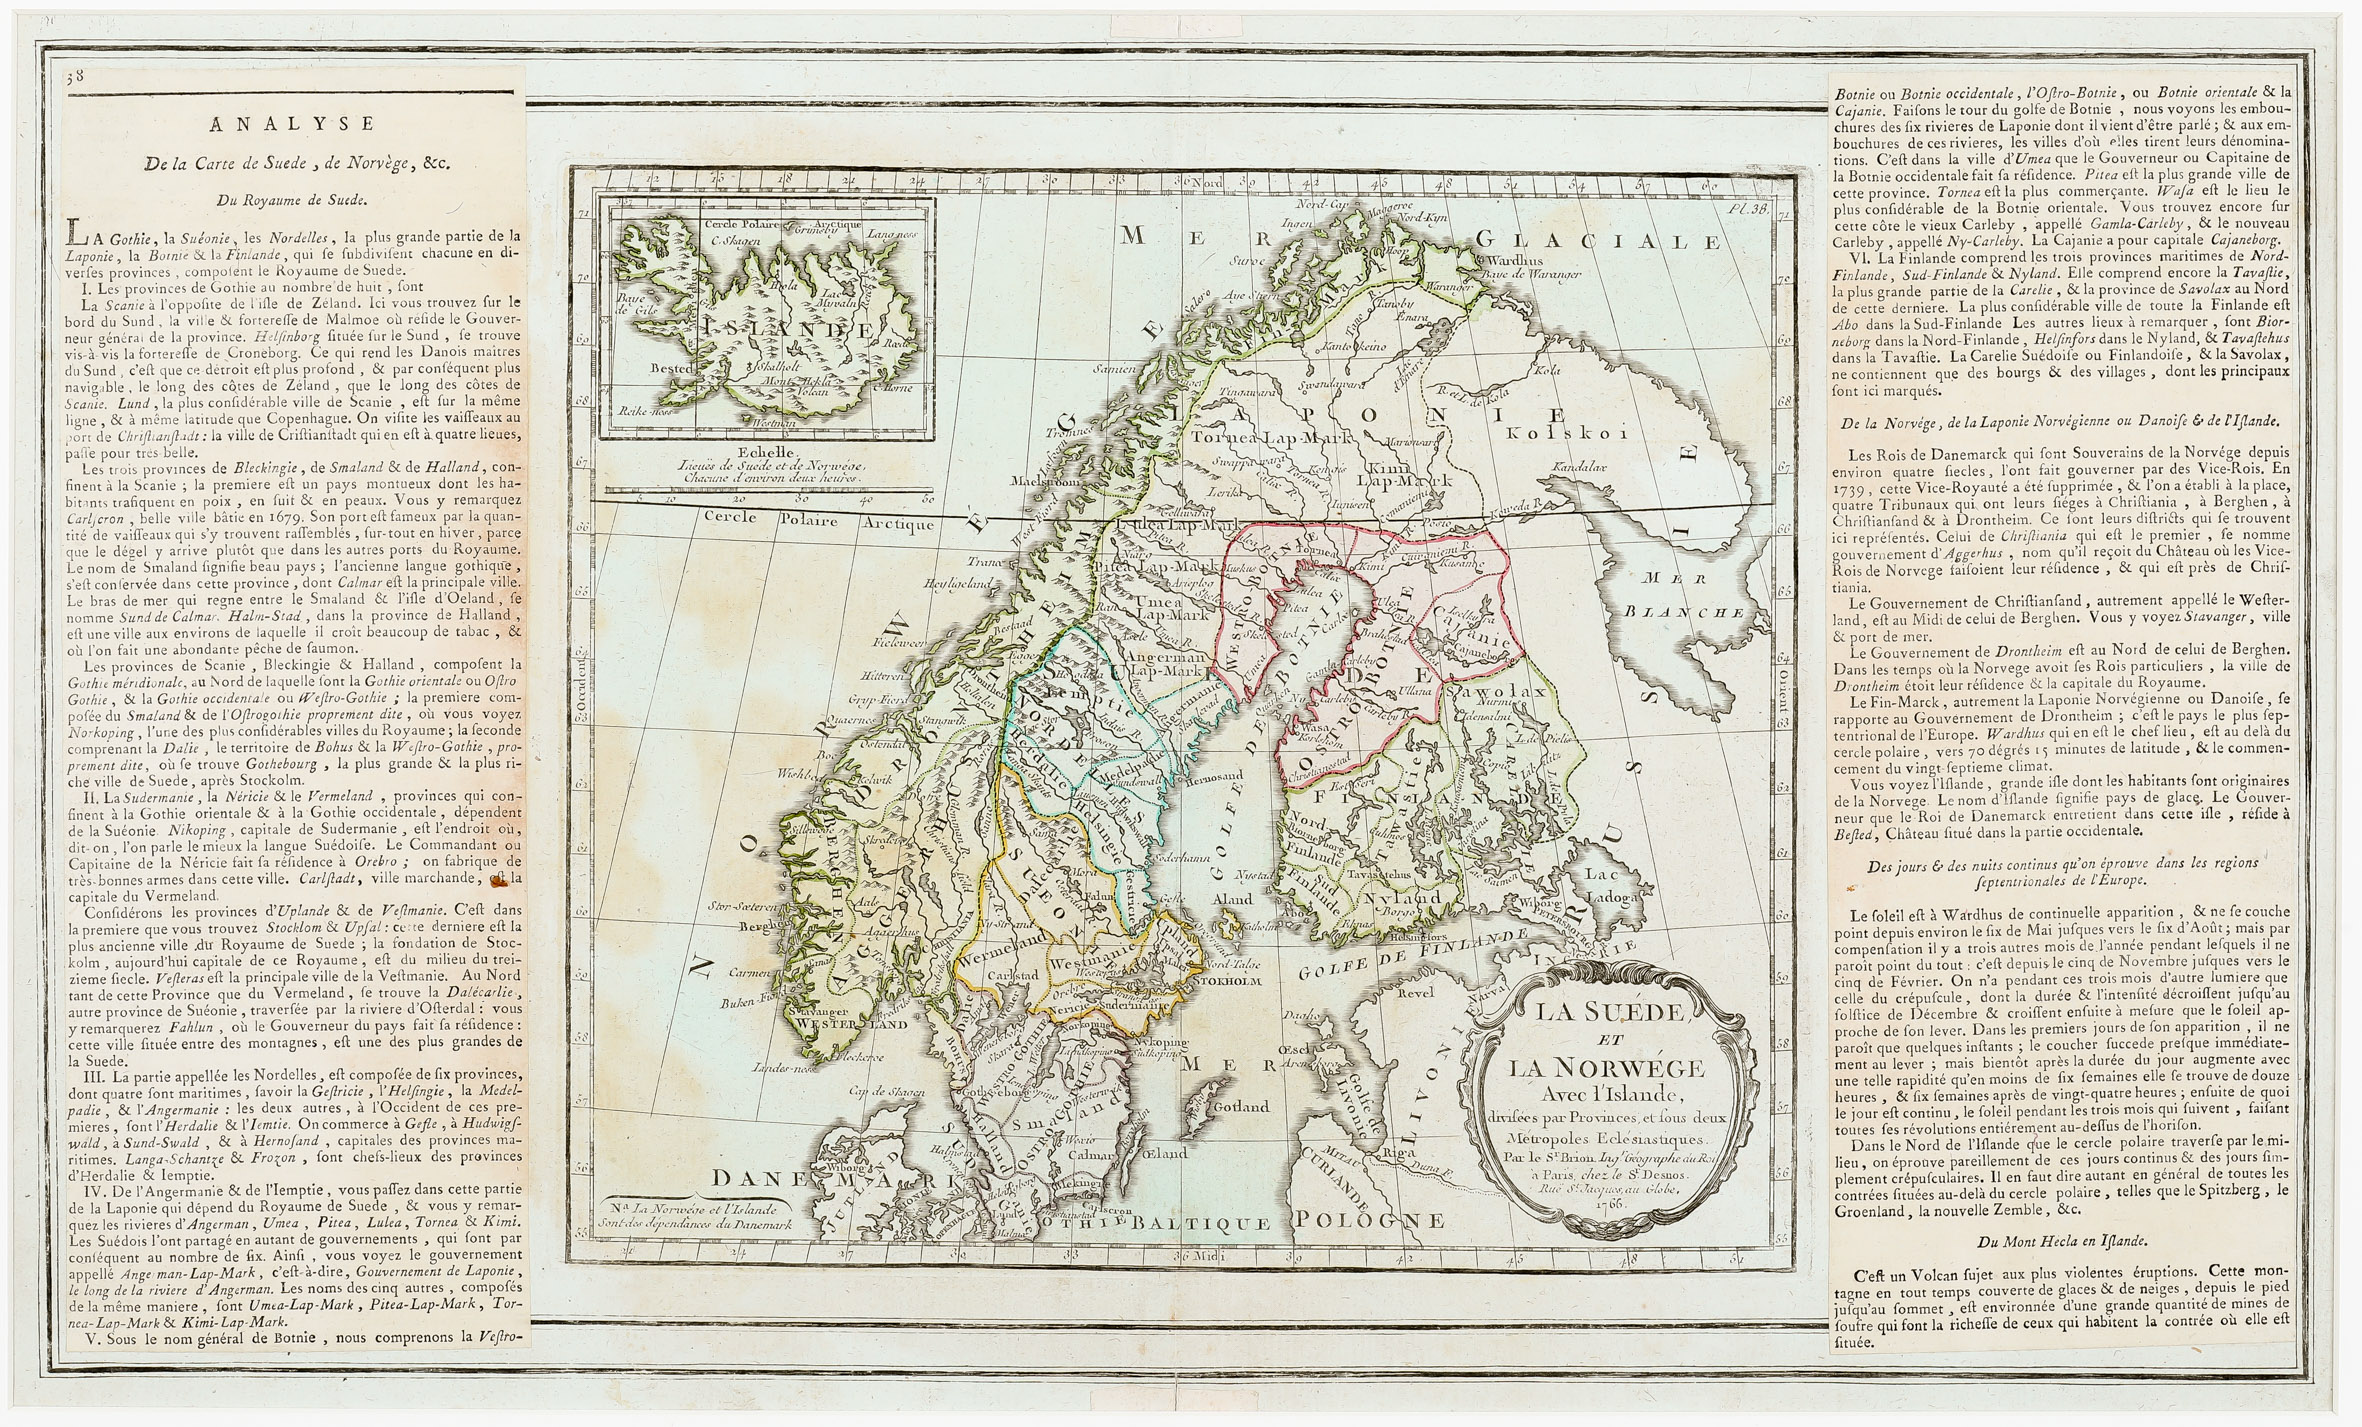 132. La Suede et La Norwege Avec l‘Islande, divisee par Provinces, et sous deux Metropoles, Ecclesiastiques.